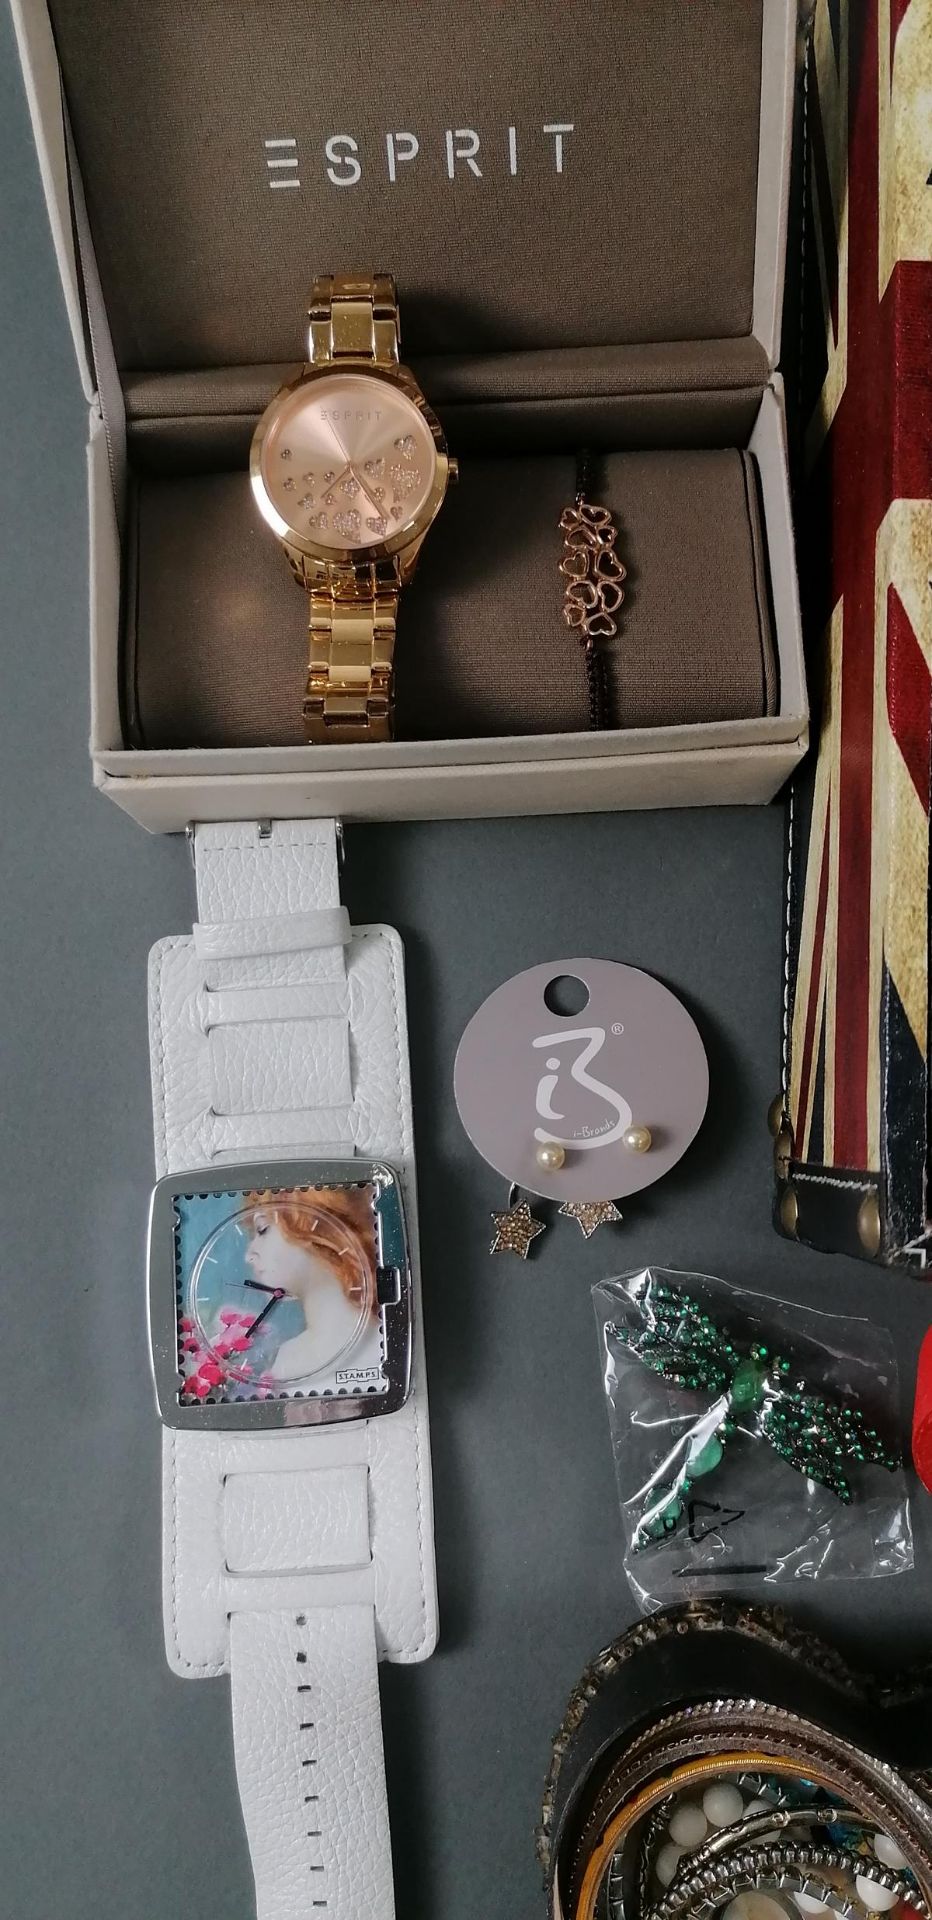 Großes Konvolut Schmuck, Armbanduhren und Modeschmuck im Koffer - Bild 2 aus 11